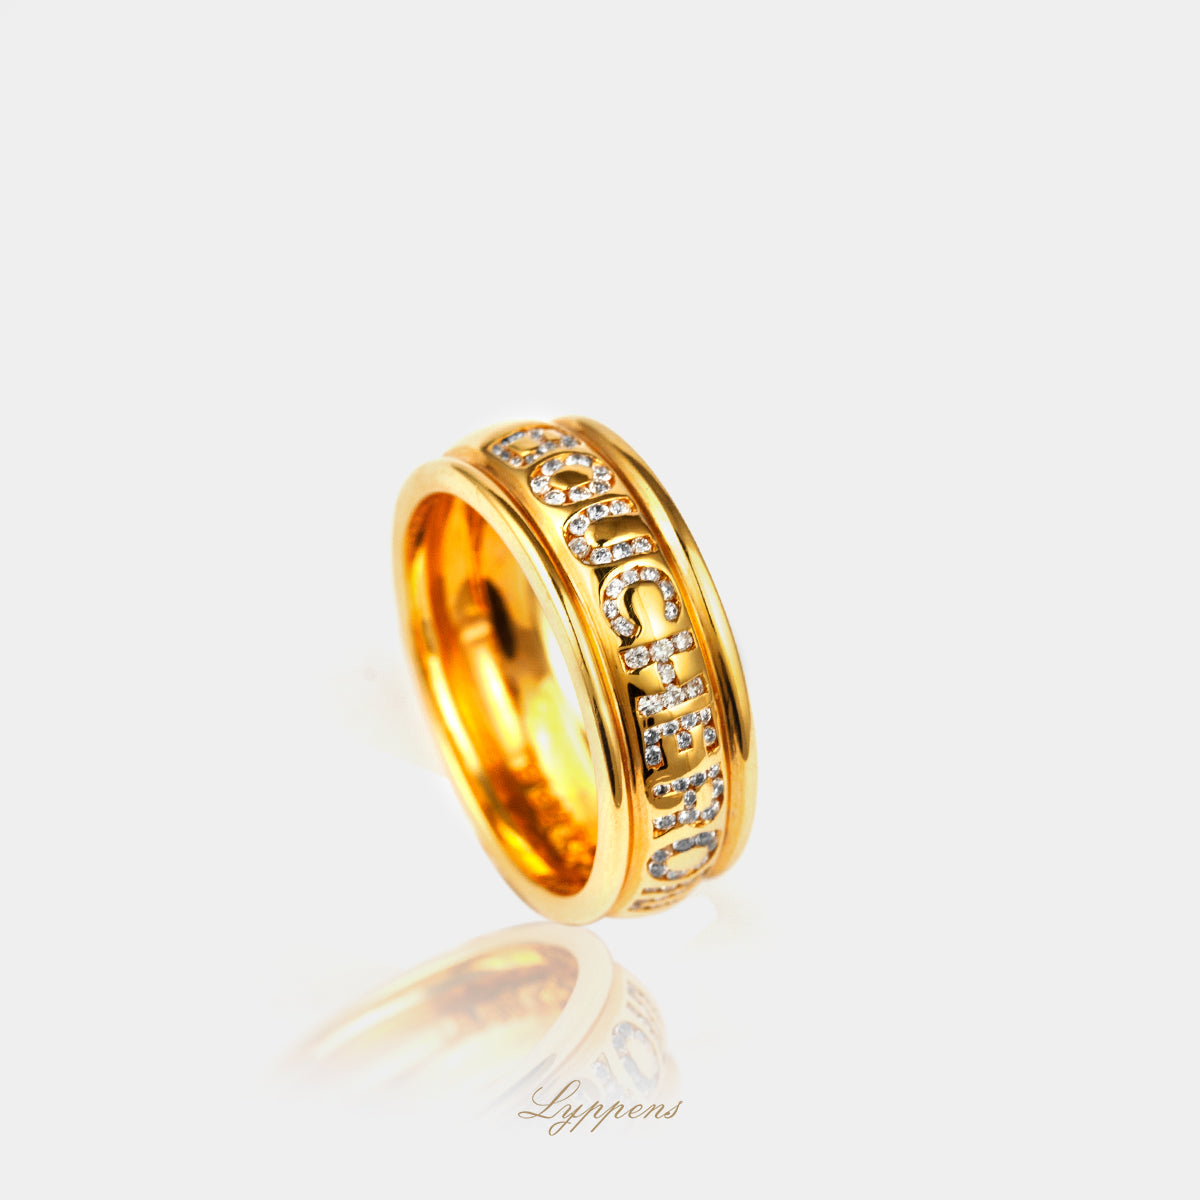 staande geelgouden boucheron ring, de naam boucheron is in de ring ingelegd met briljant geslepen diamant 